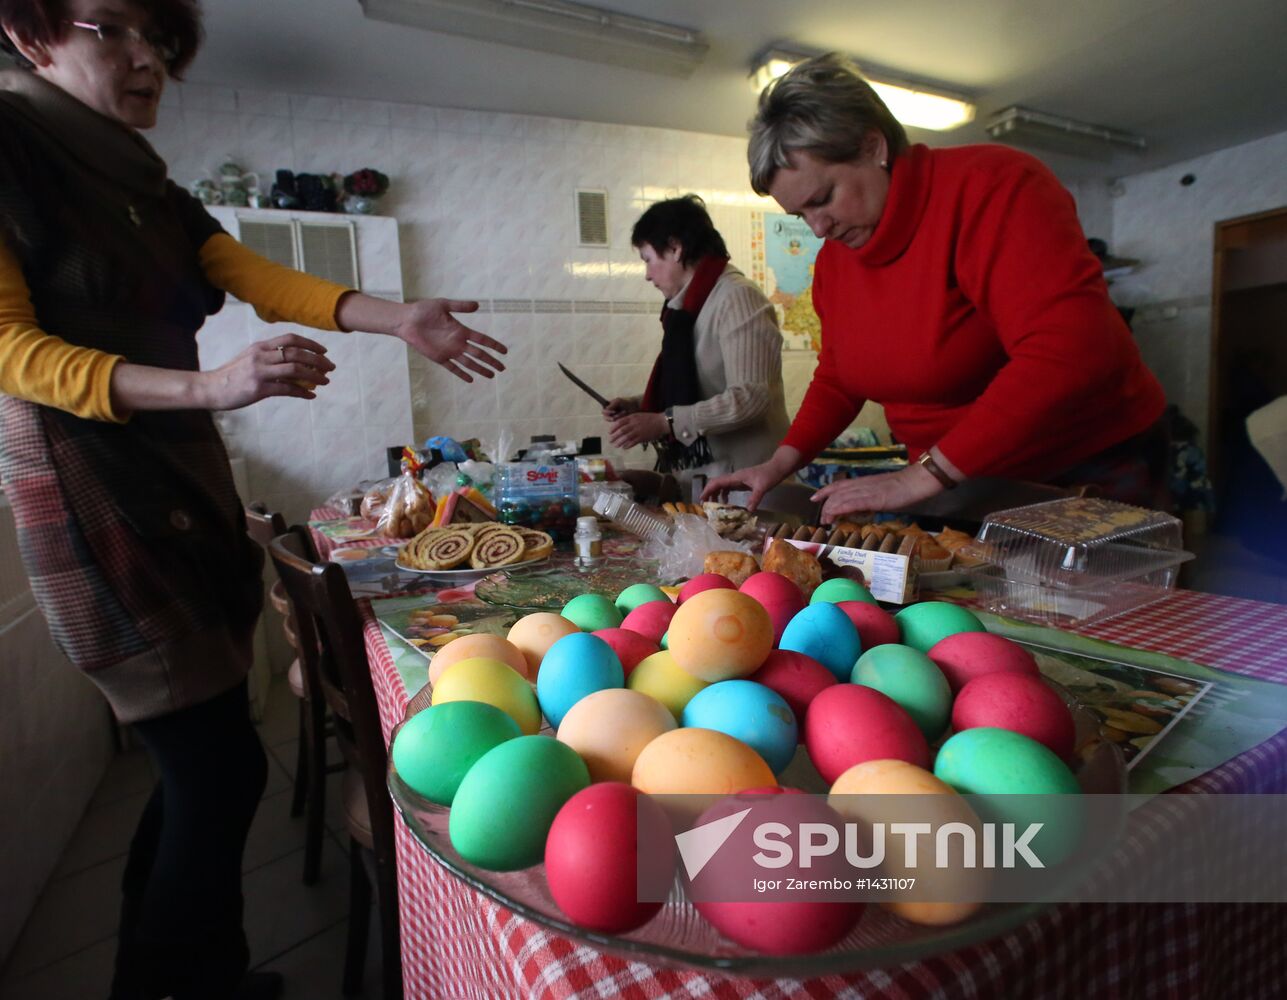 Celebrating Catholic Easter in Kaliningrad